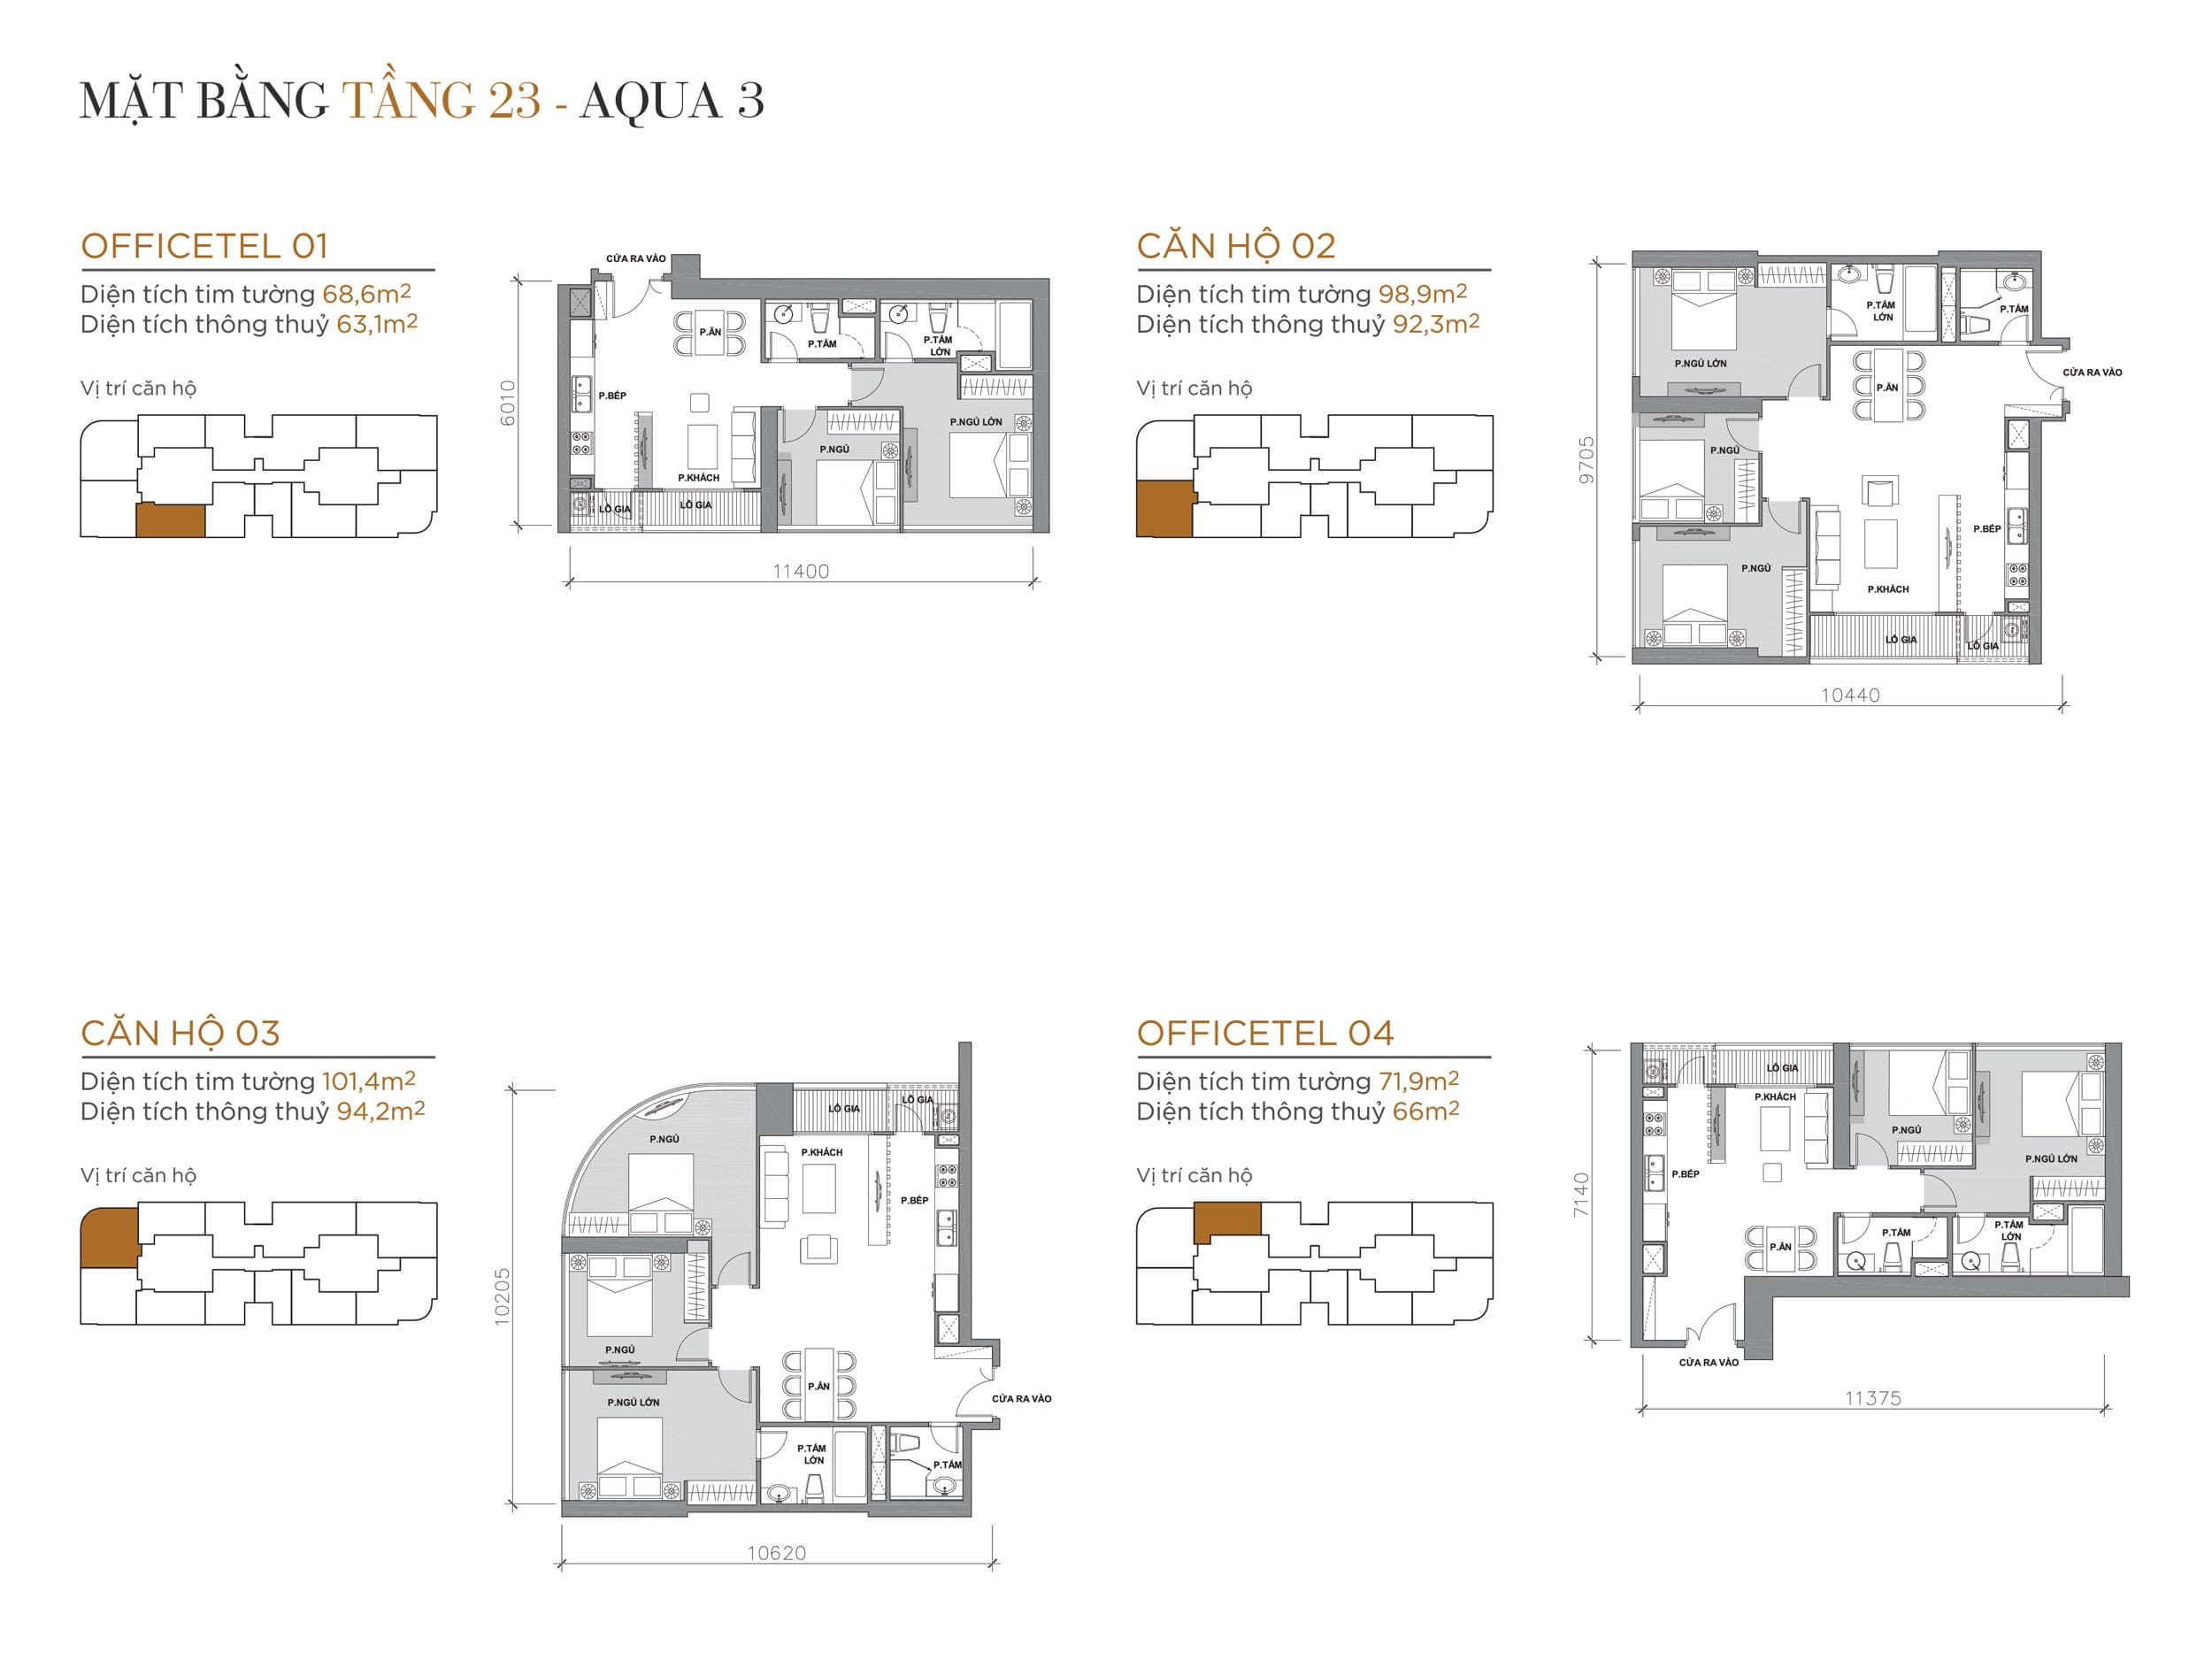 Layout thiết kế điển hình Tầng 23 Tòa Aqua 3 loại Officetel 01, Căn hộ 02, Căn hộ 03, Officetel 04.